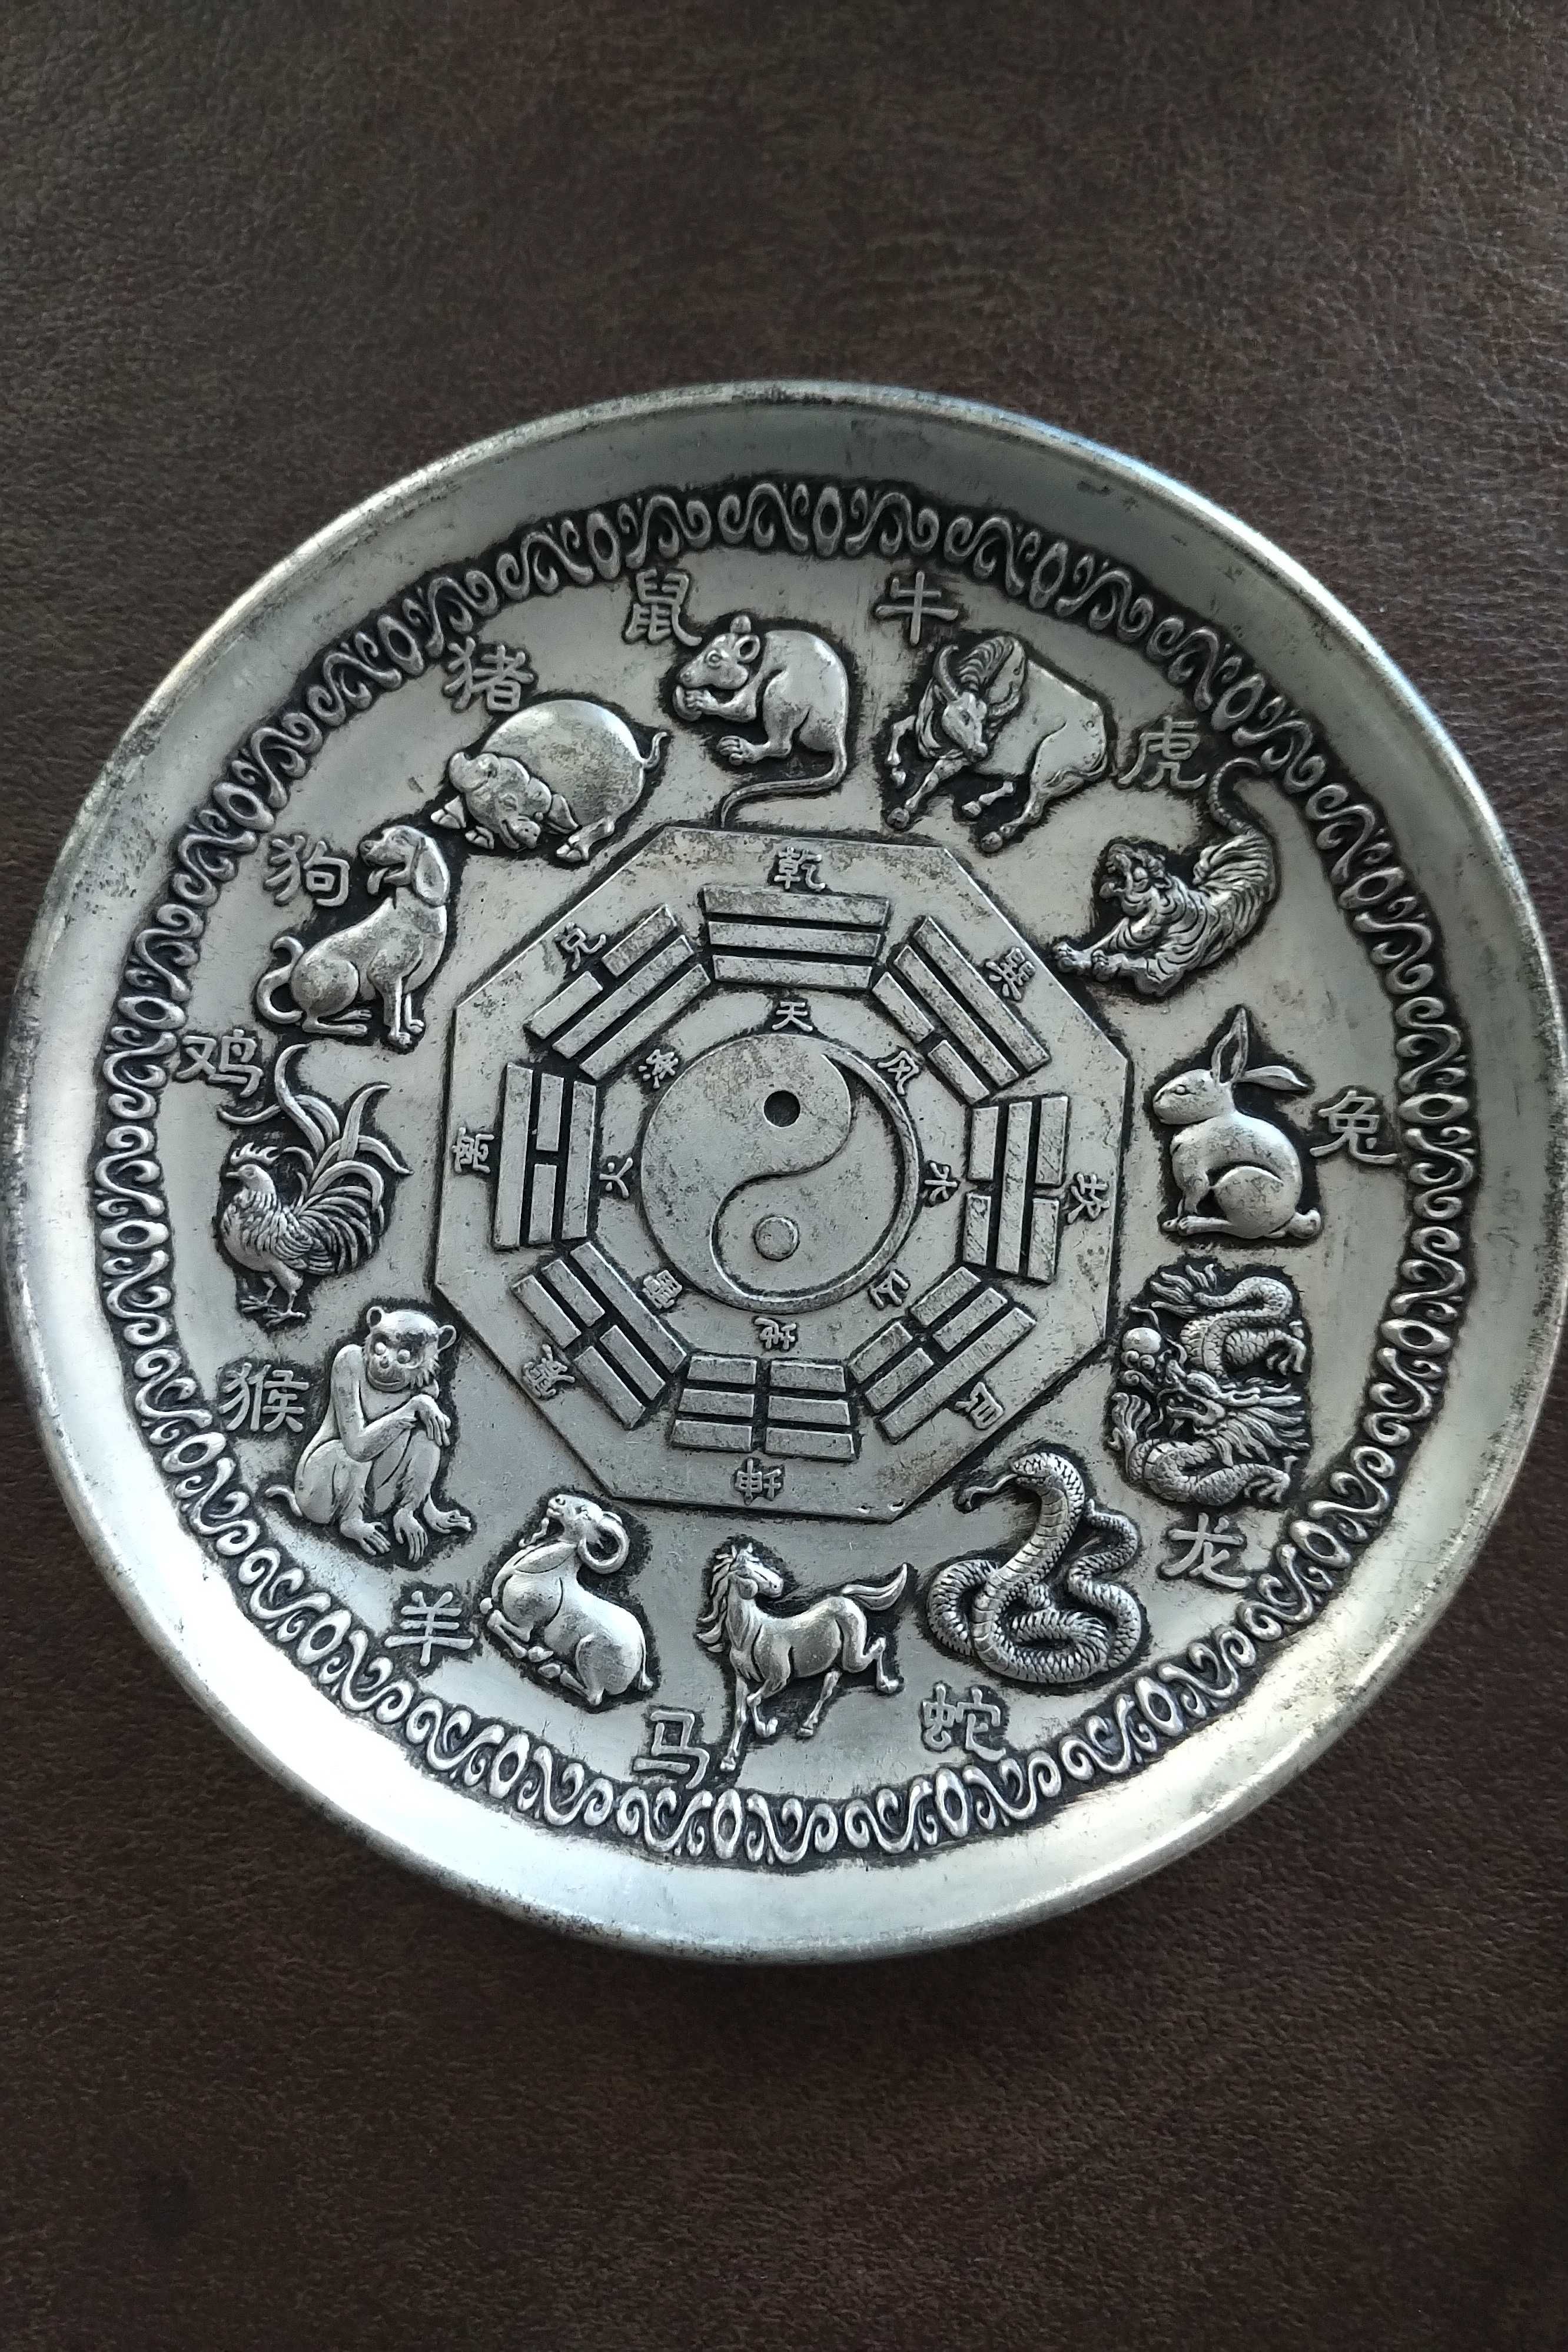 Horoskop symbole -Tao chinski metalowy ( tzw bialy metal ) talerz